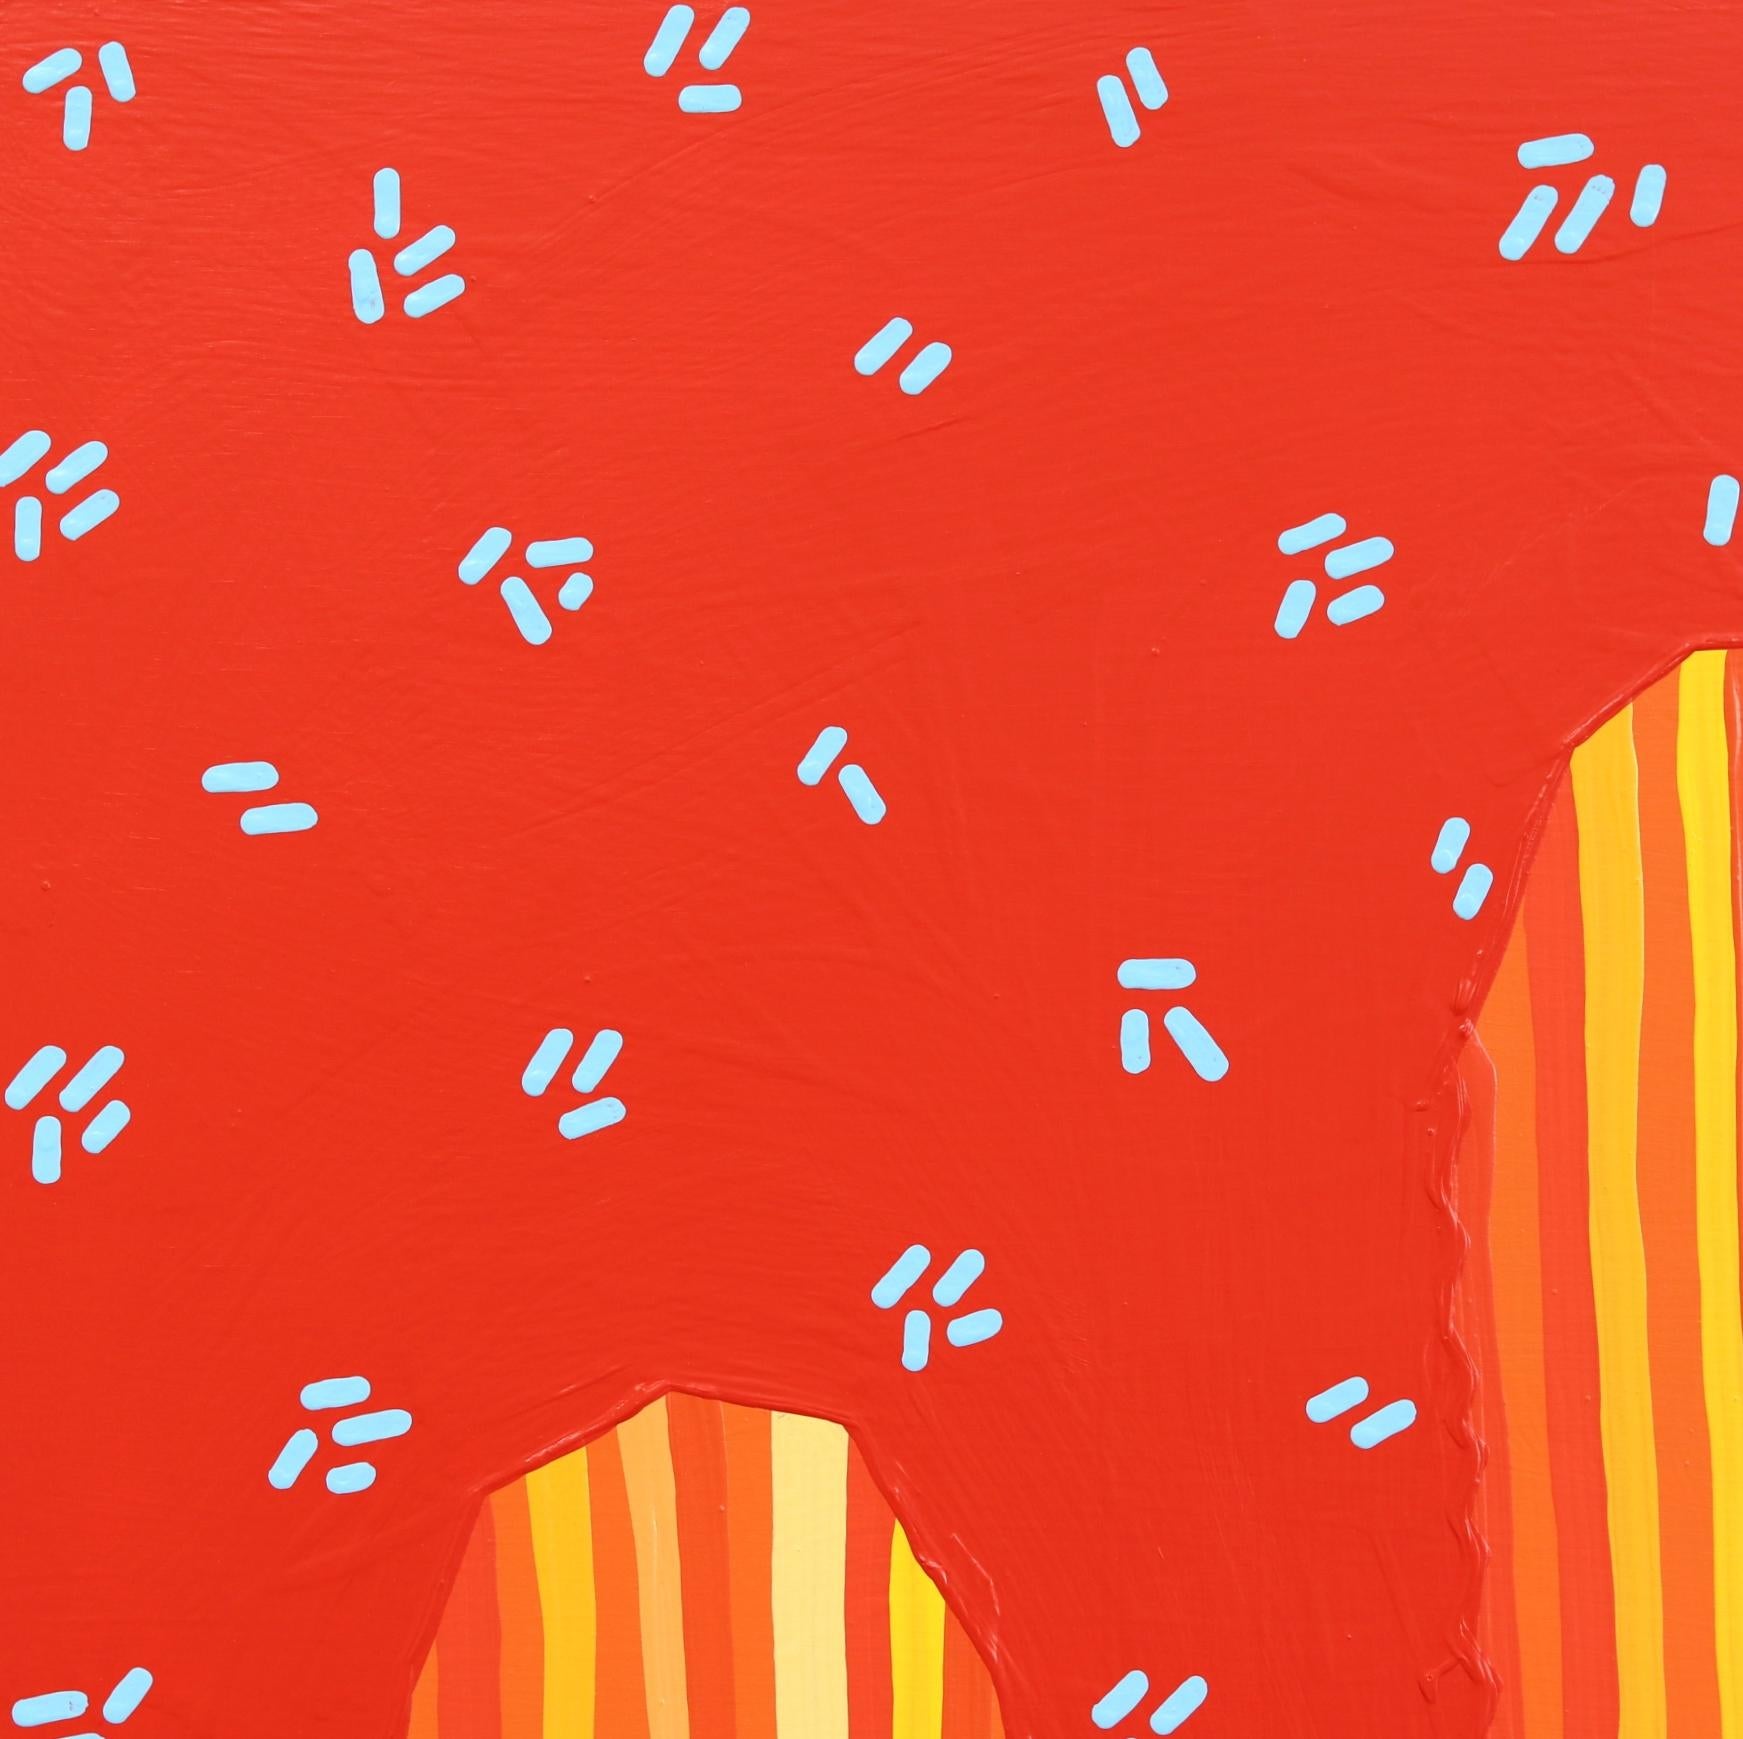 Sedona - Peinture de cactus d'inspiration Pop Art d'inspiration Sud-Ouest rouge orange vif - Minimaliste Painting par Will Beger